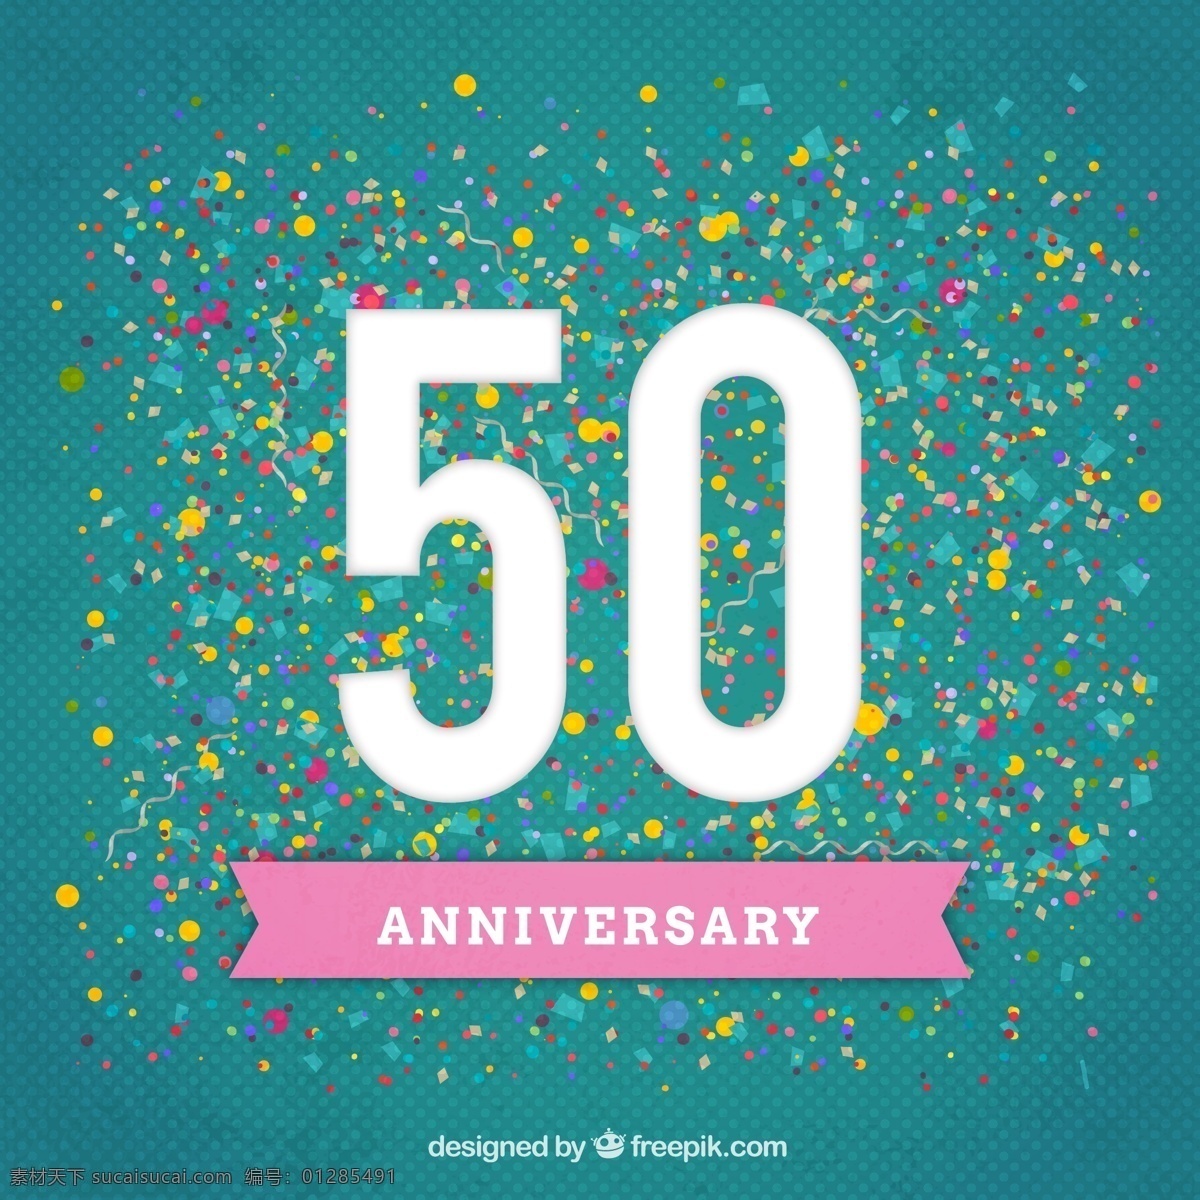 创意 周年纪念 贺卡 矢量 矢量图 纪念日 50周年 丝带 彩色纸屑 背景